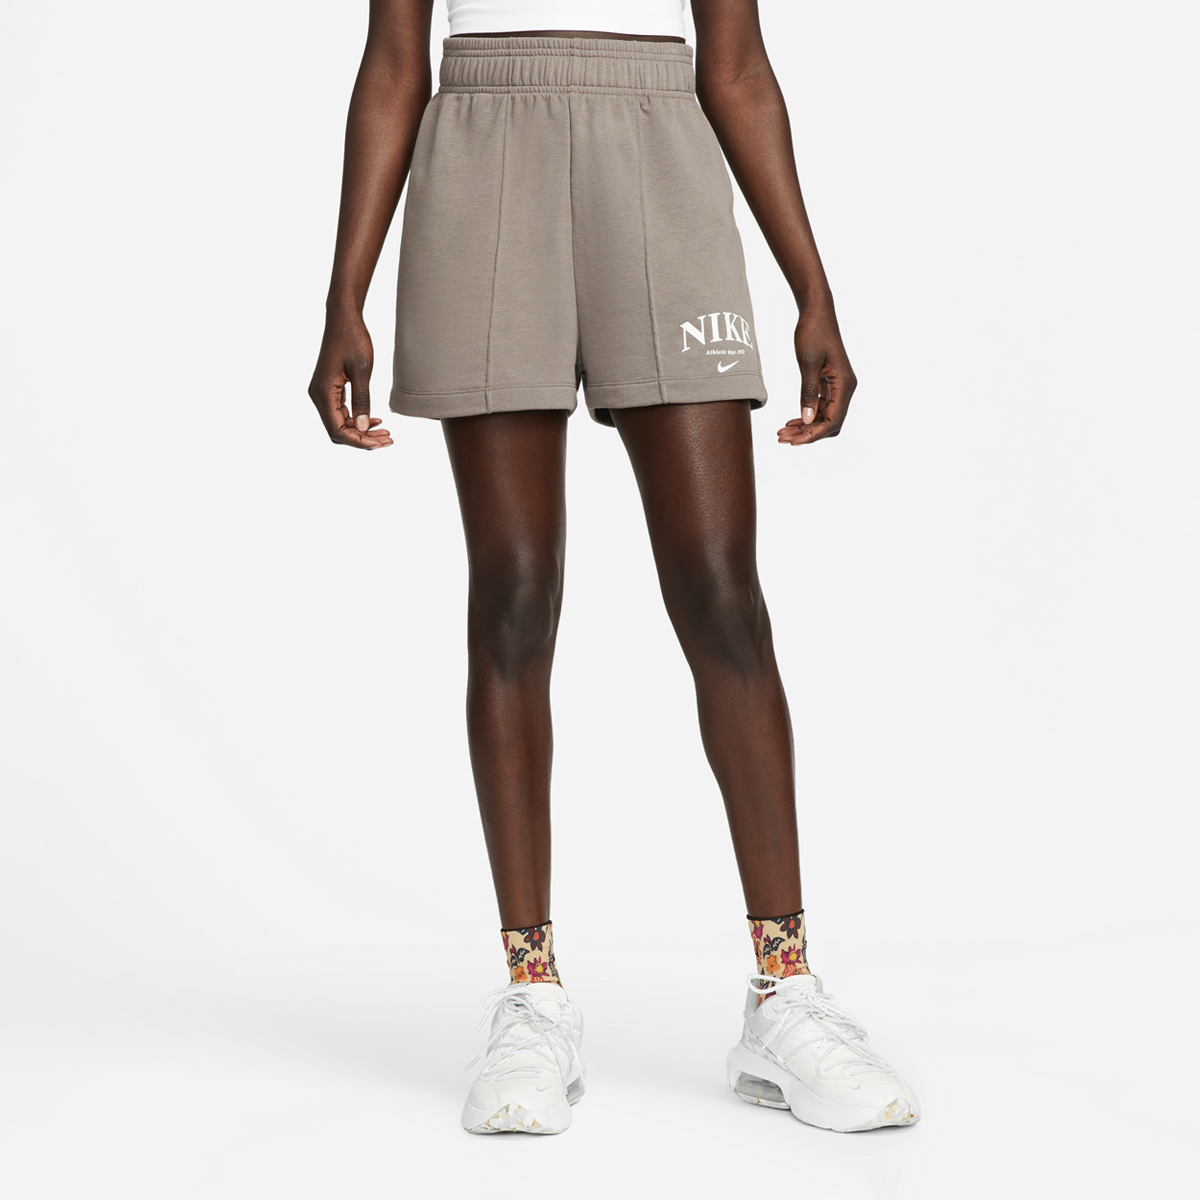 Productafbeelding: Sportswear Womens Fleece Shorts